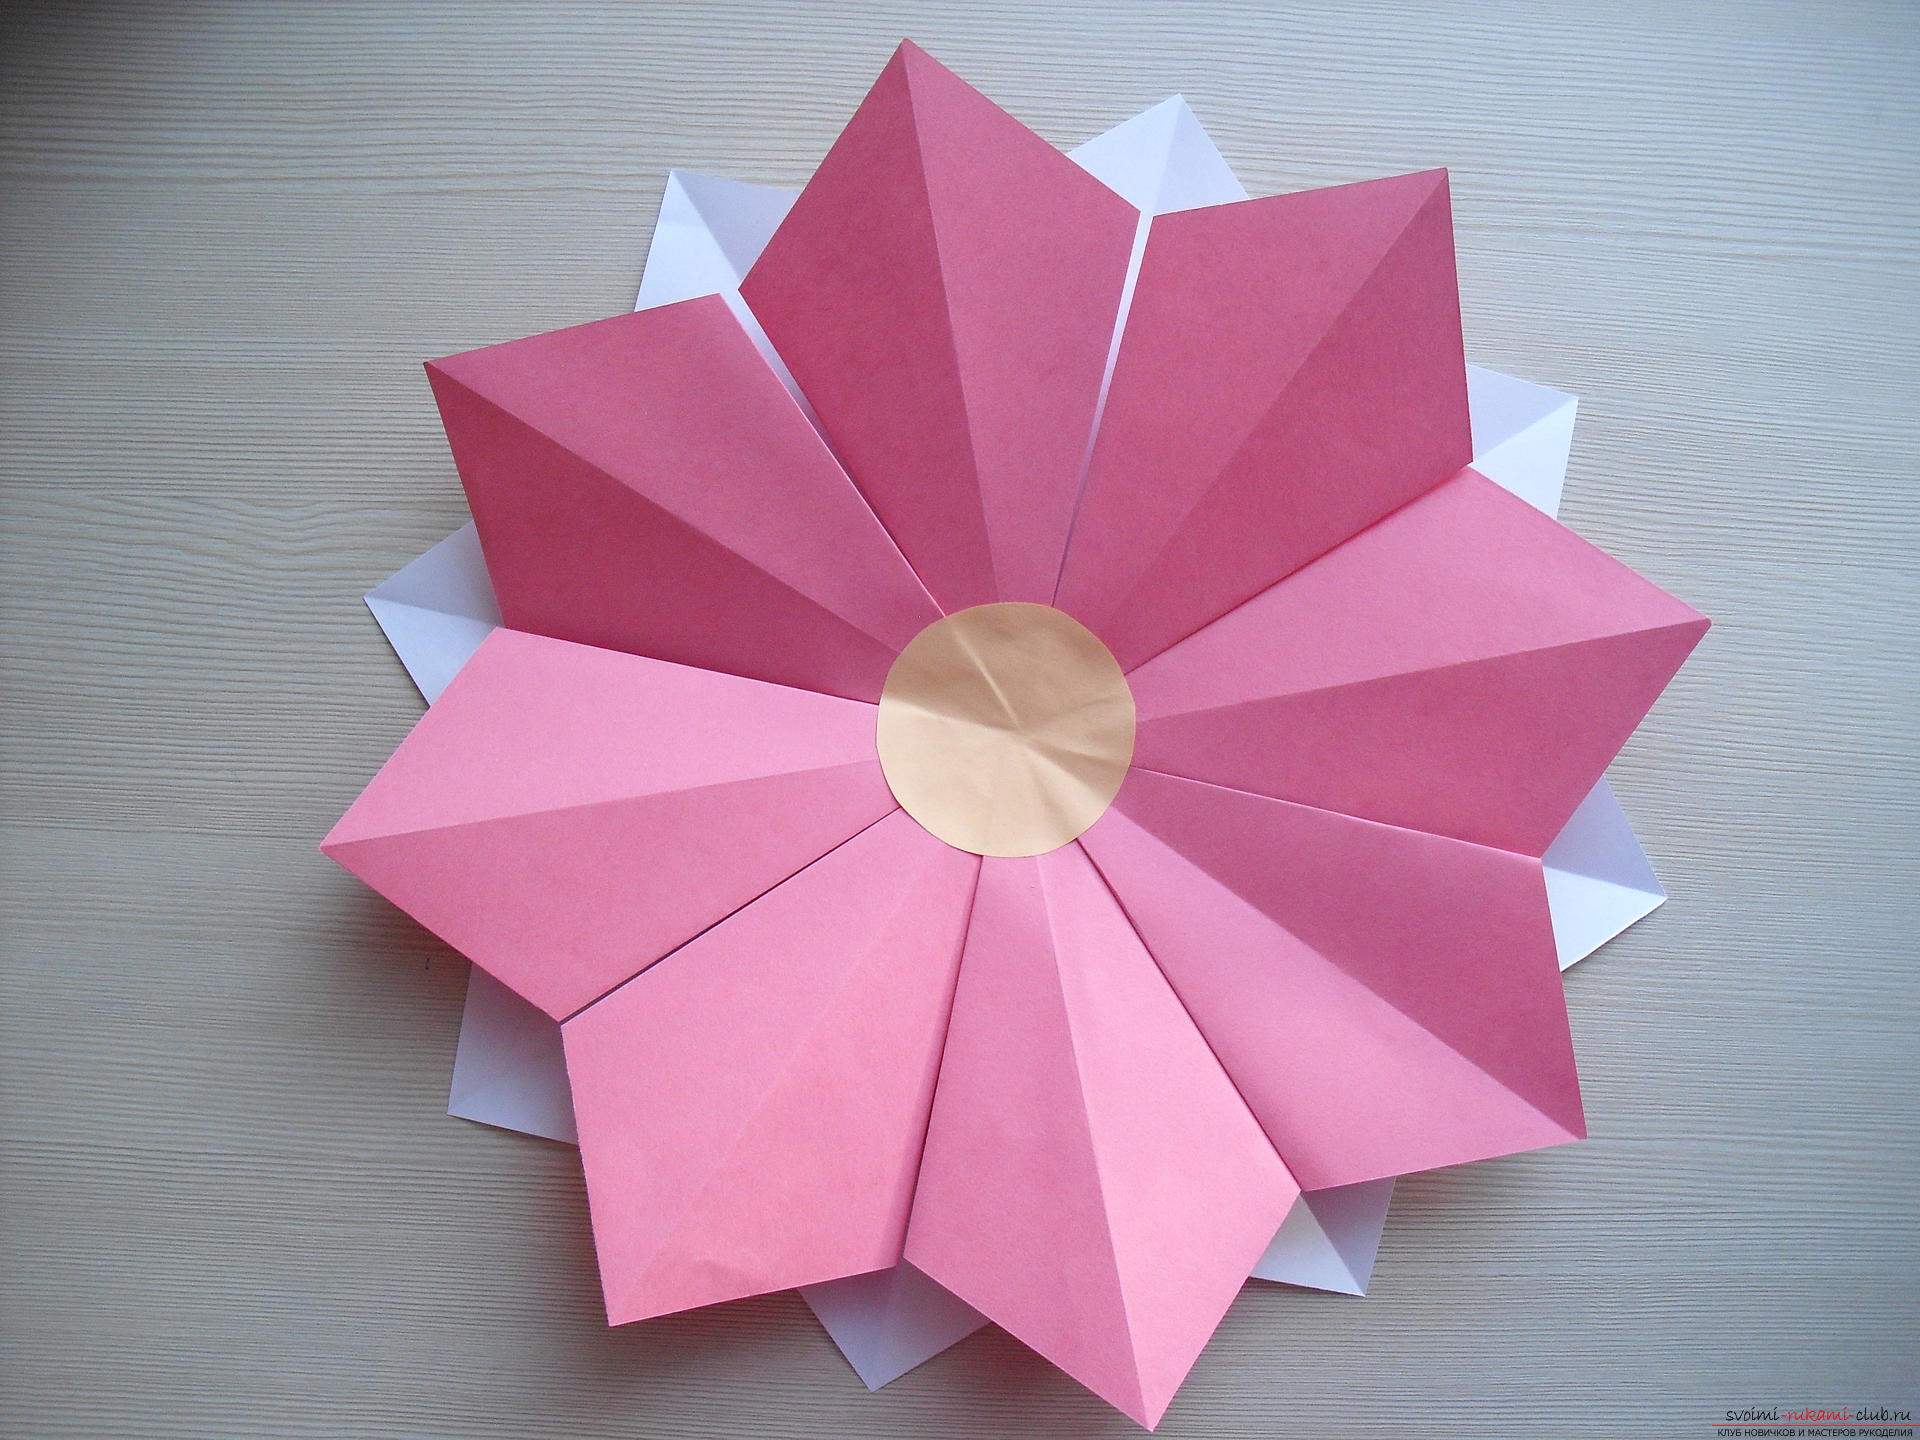 Этот мастер-класс научит как сделать цветок-оригами из бумаги.. Фото №13